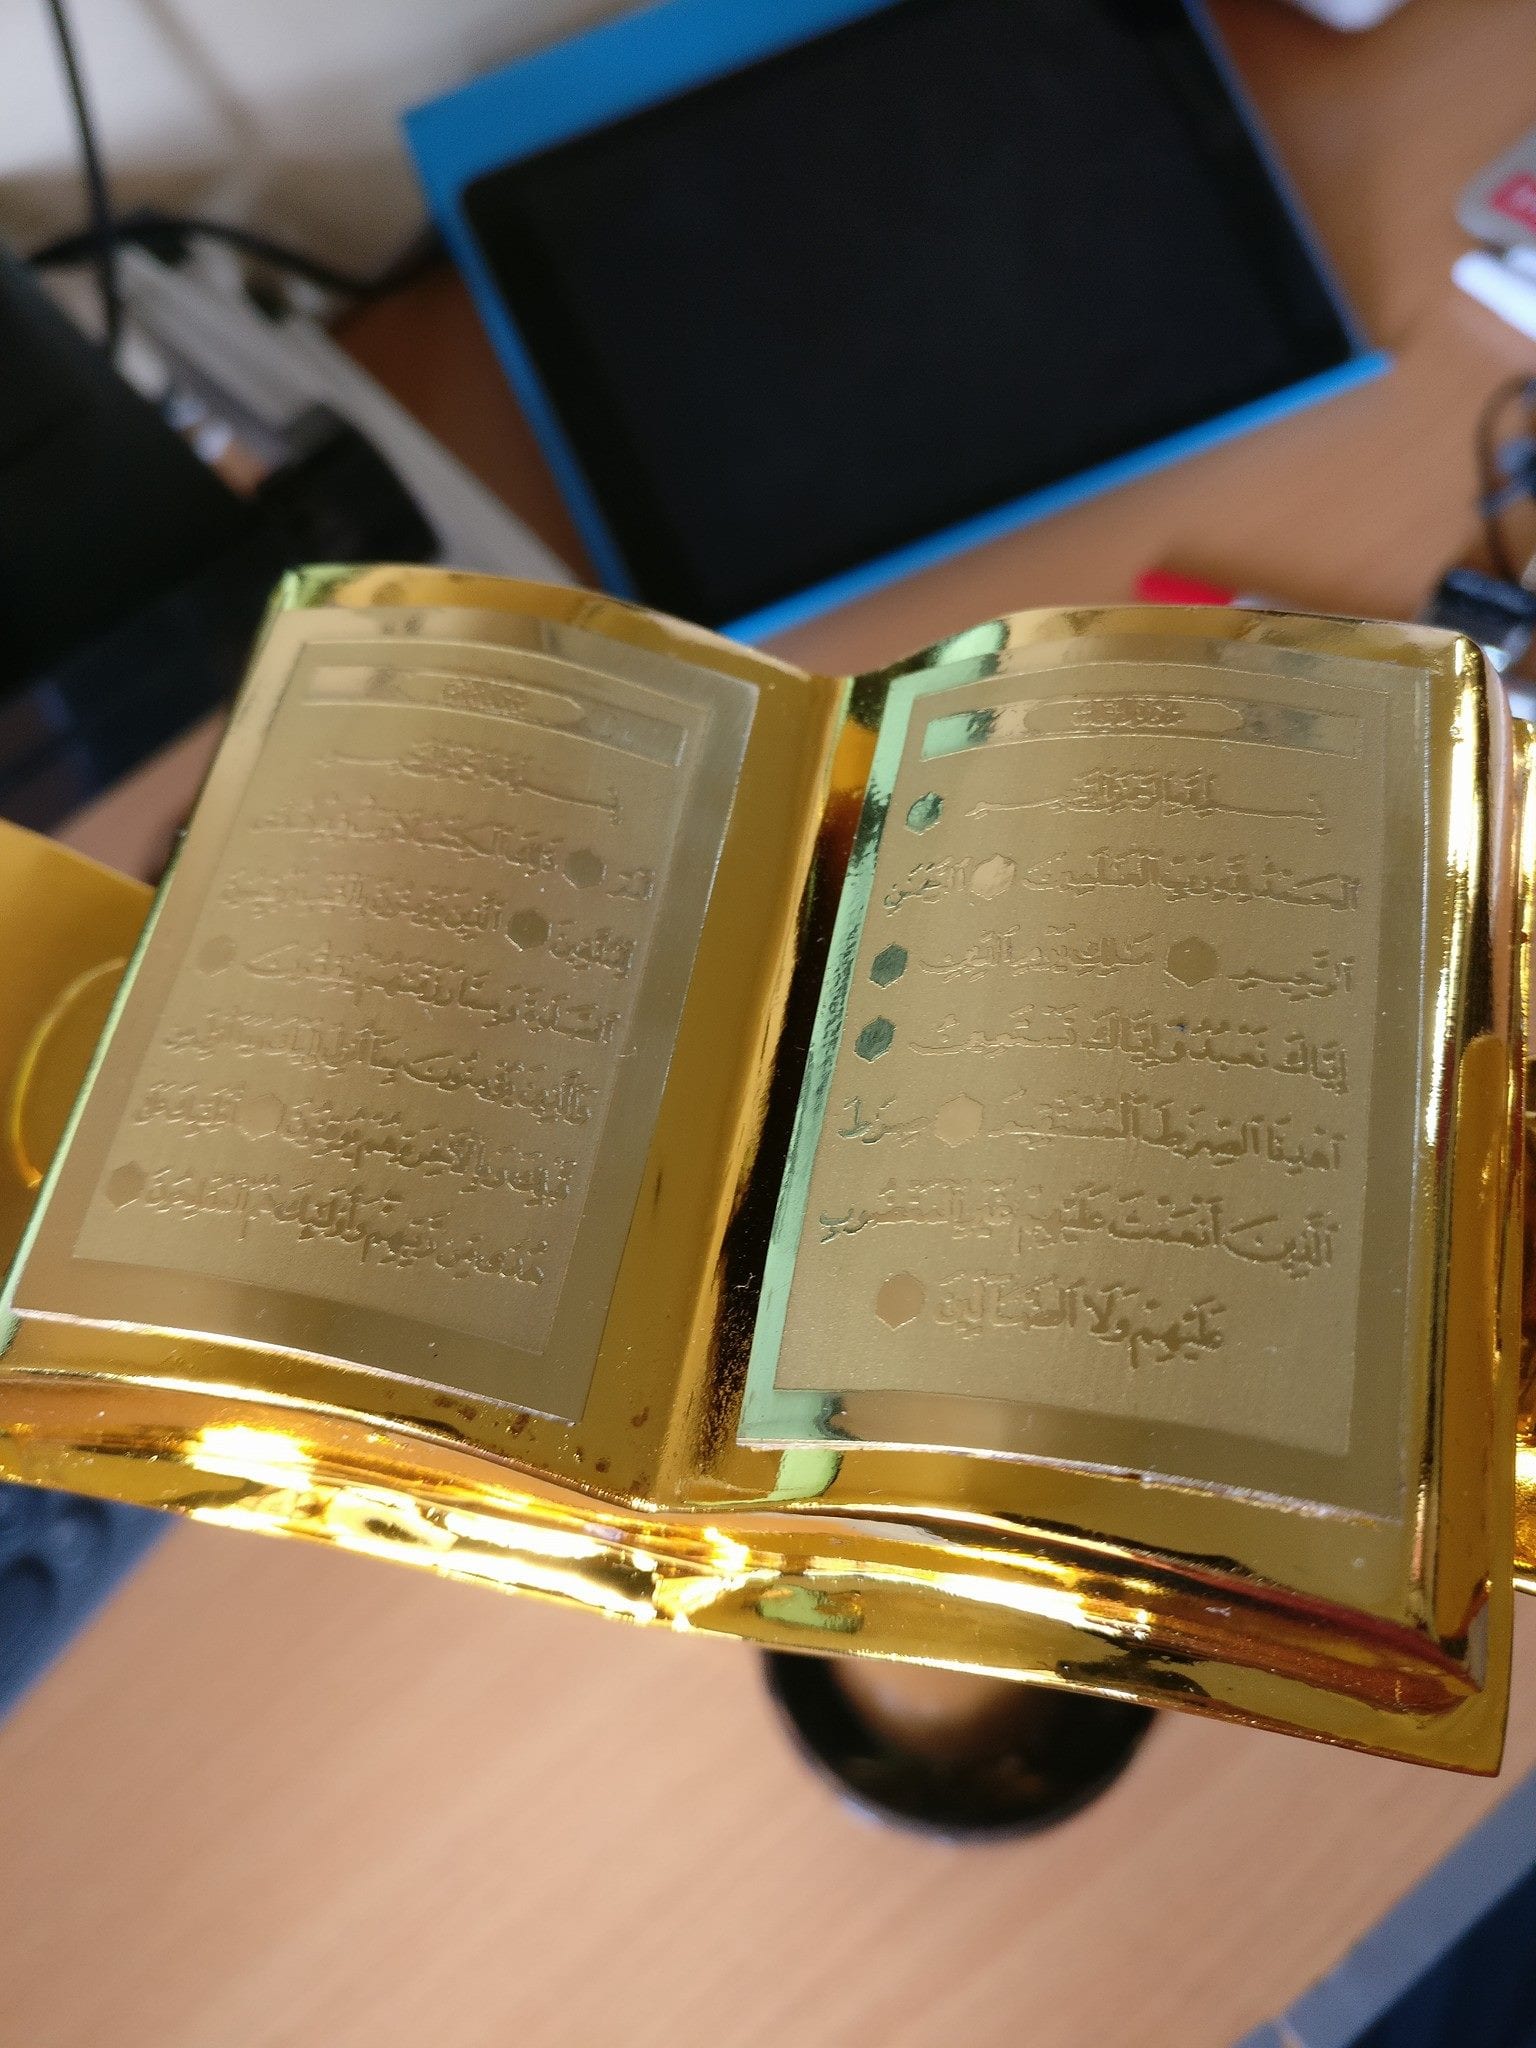 KIRIM.EMAIL Mendapatkan Penghargaan Anugrah Pecinta Al-Qur'an dari PPPA Daarul Qur'an - 6